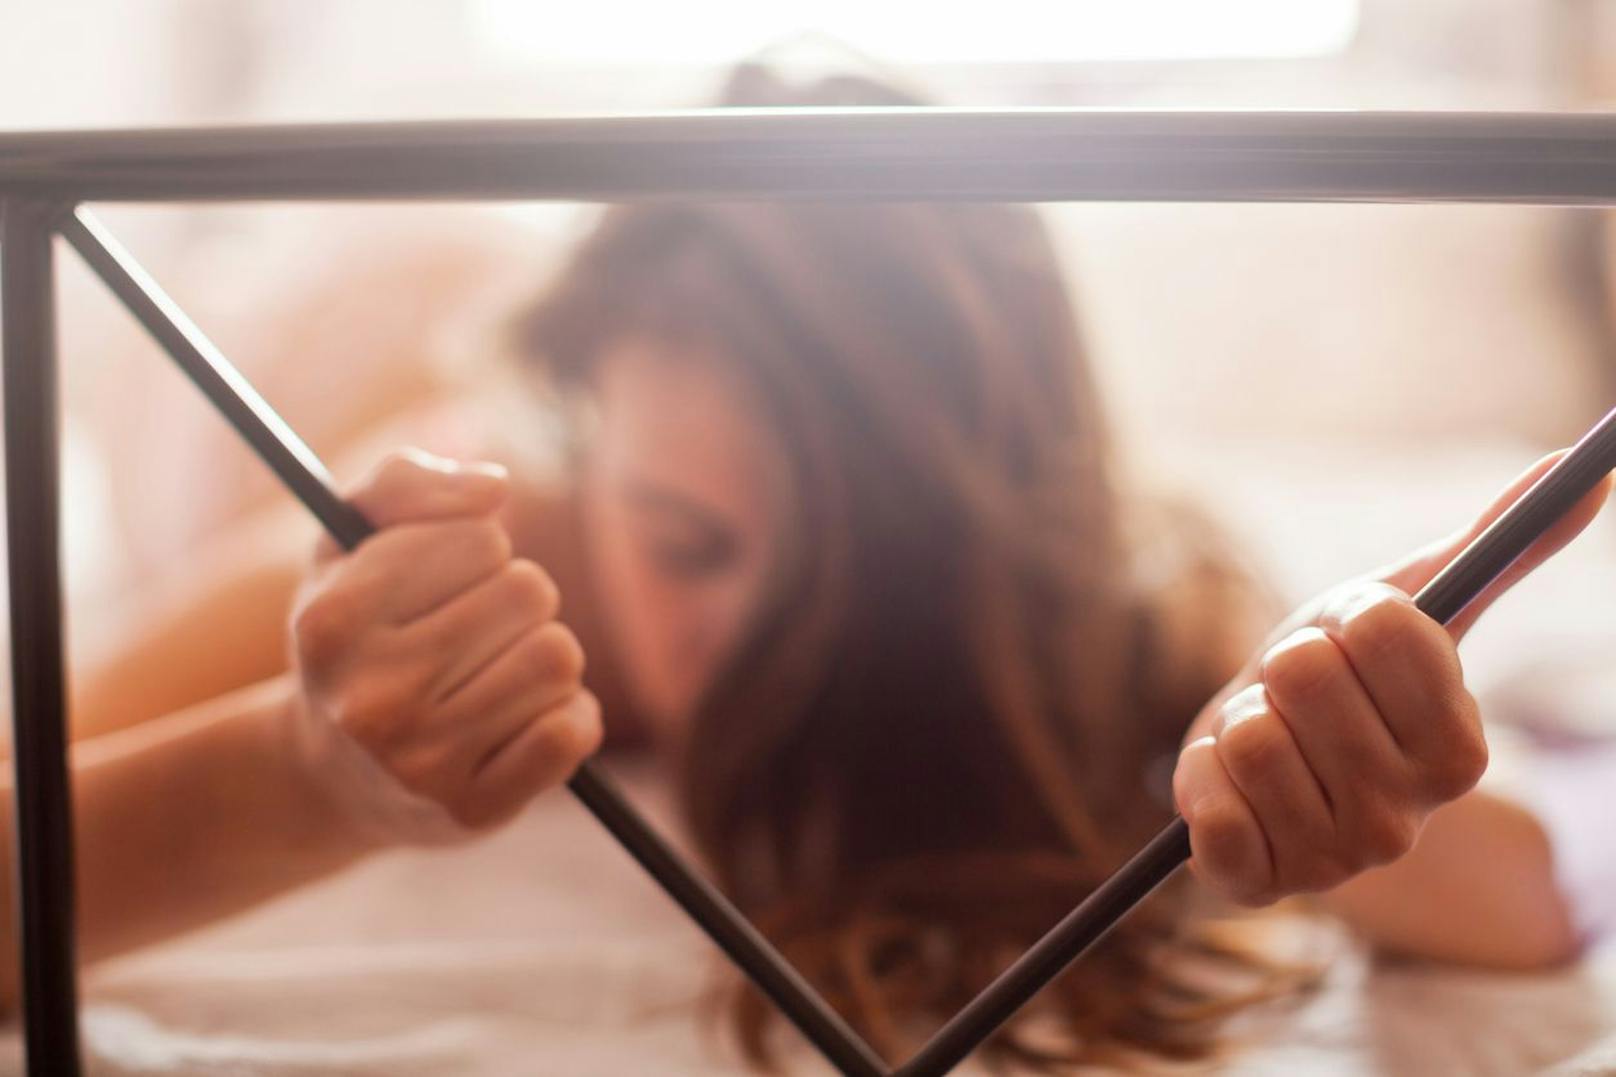 Der Hitze im Schlafzimmer trotzen – mit diesen fünf Tipps kein Problem.